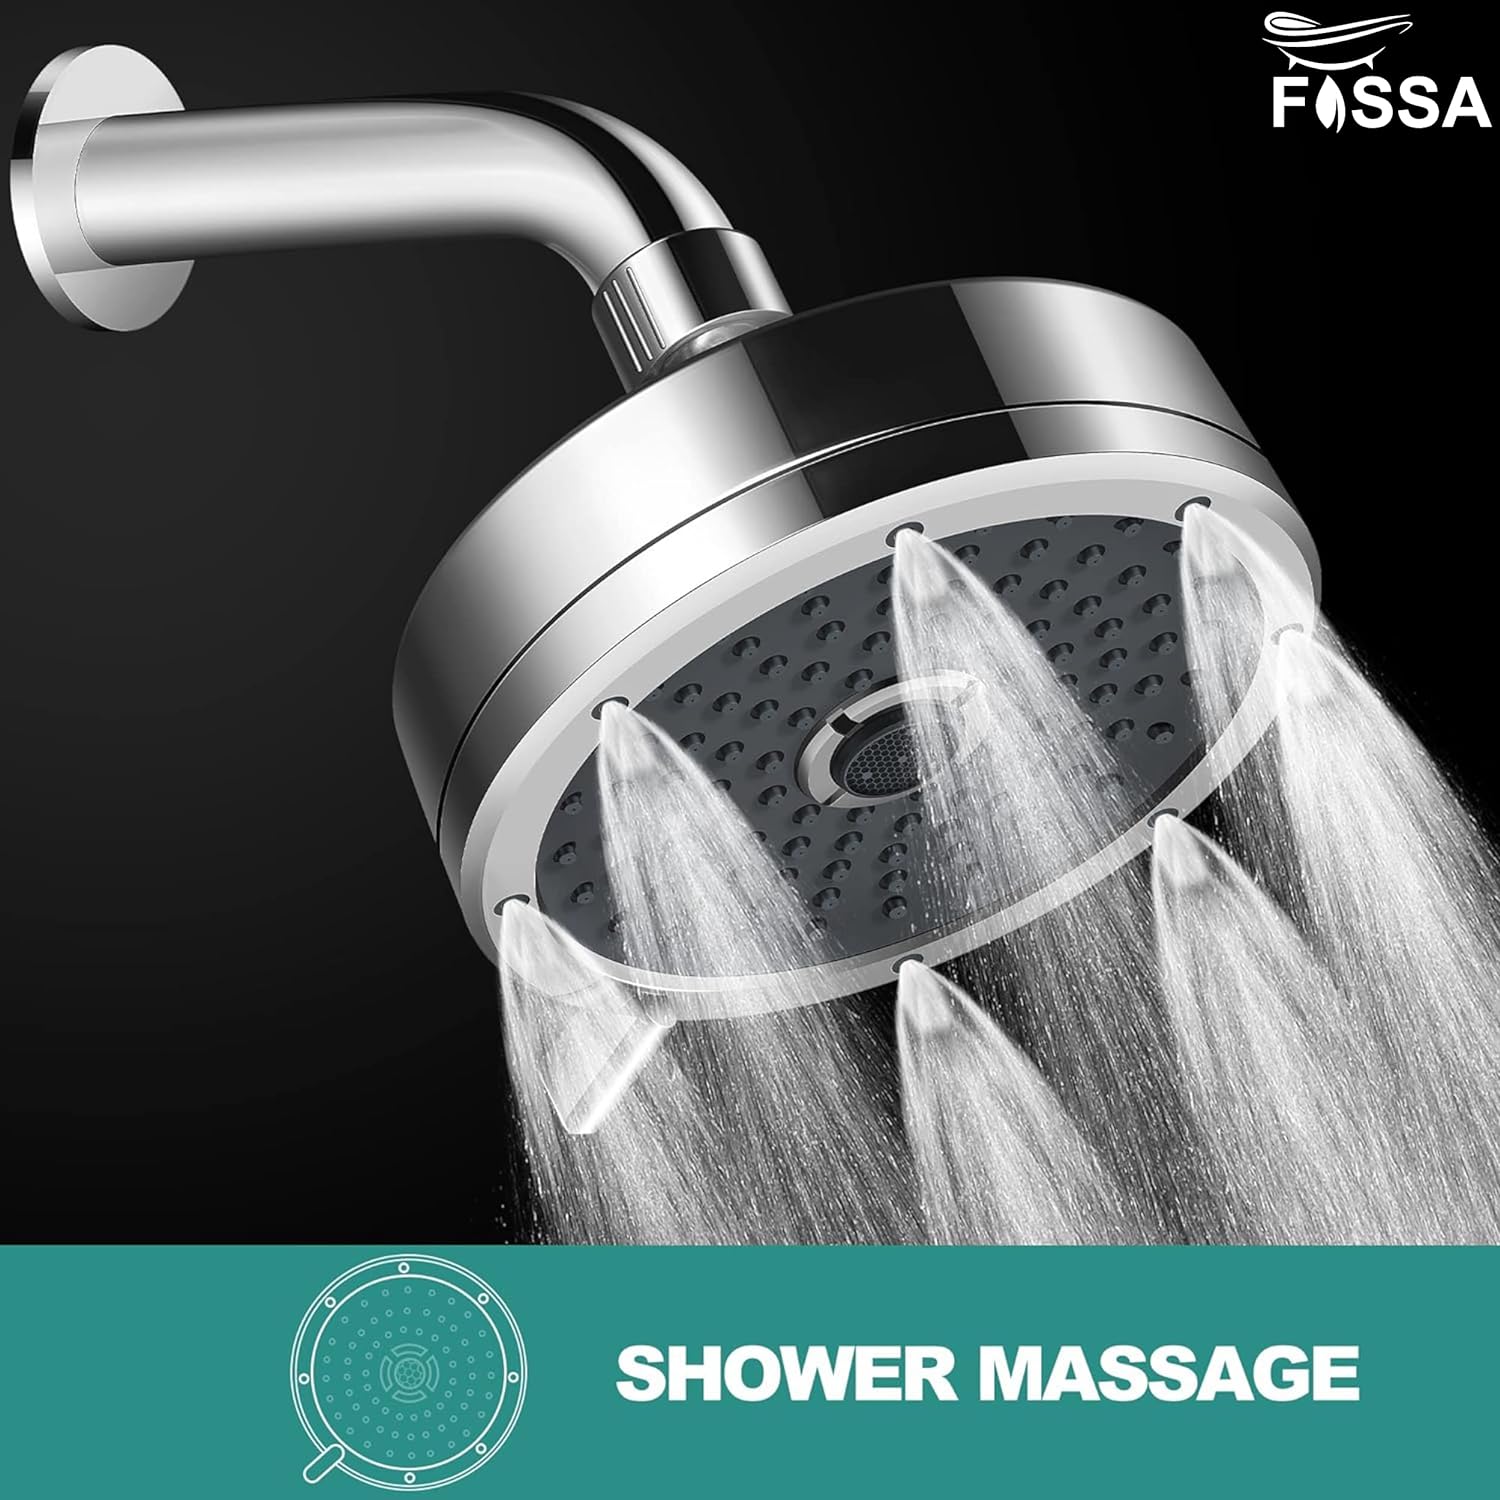 Shower Massage high pressure overhead shower 